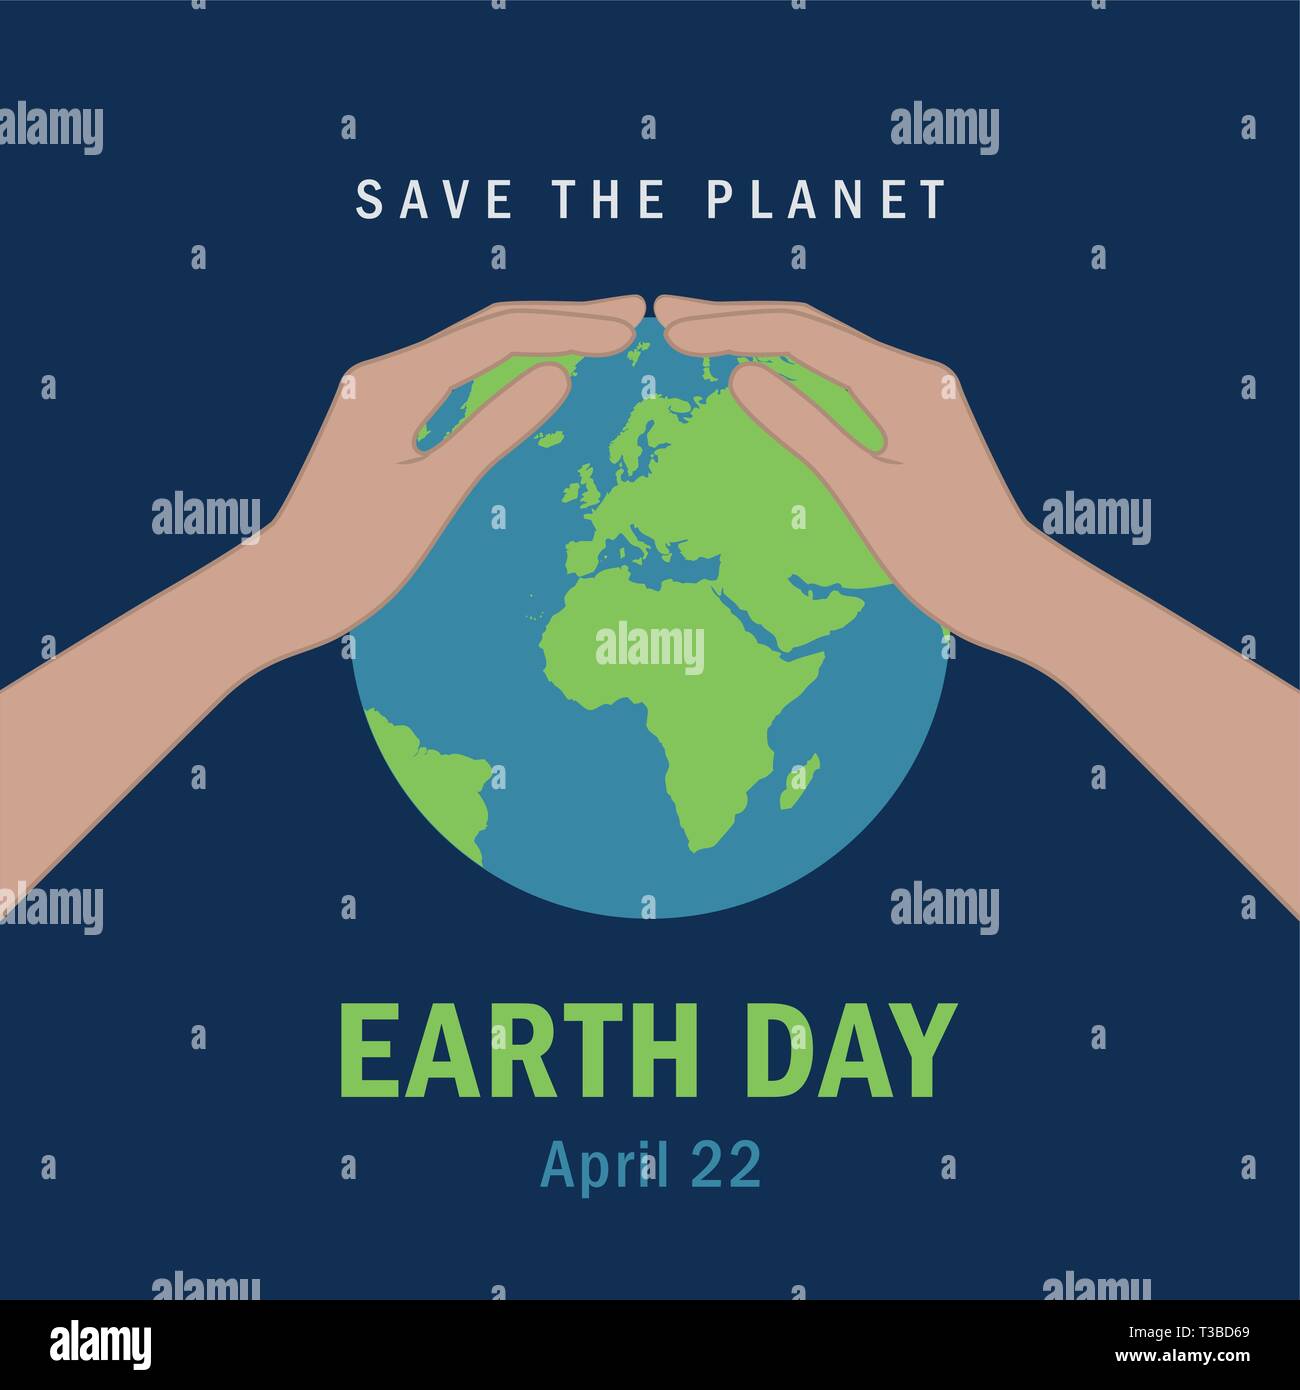 Hände schützen die Erde am 22. April Tag der Erde Rettet die Erde Konzept Vektor-illustration EPS 10. Stock Vektor